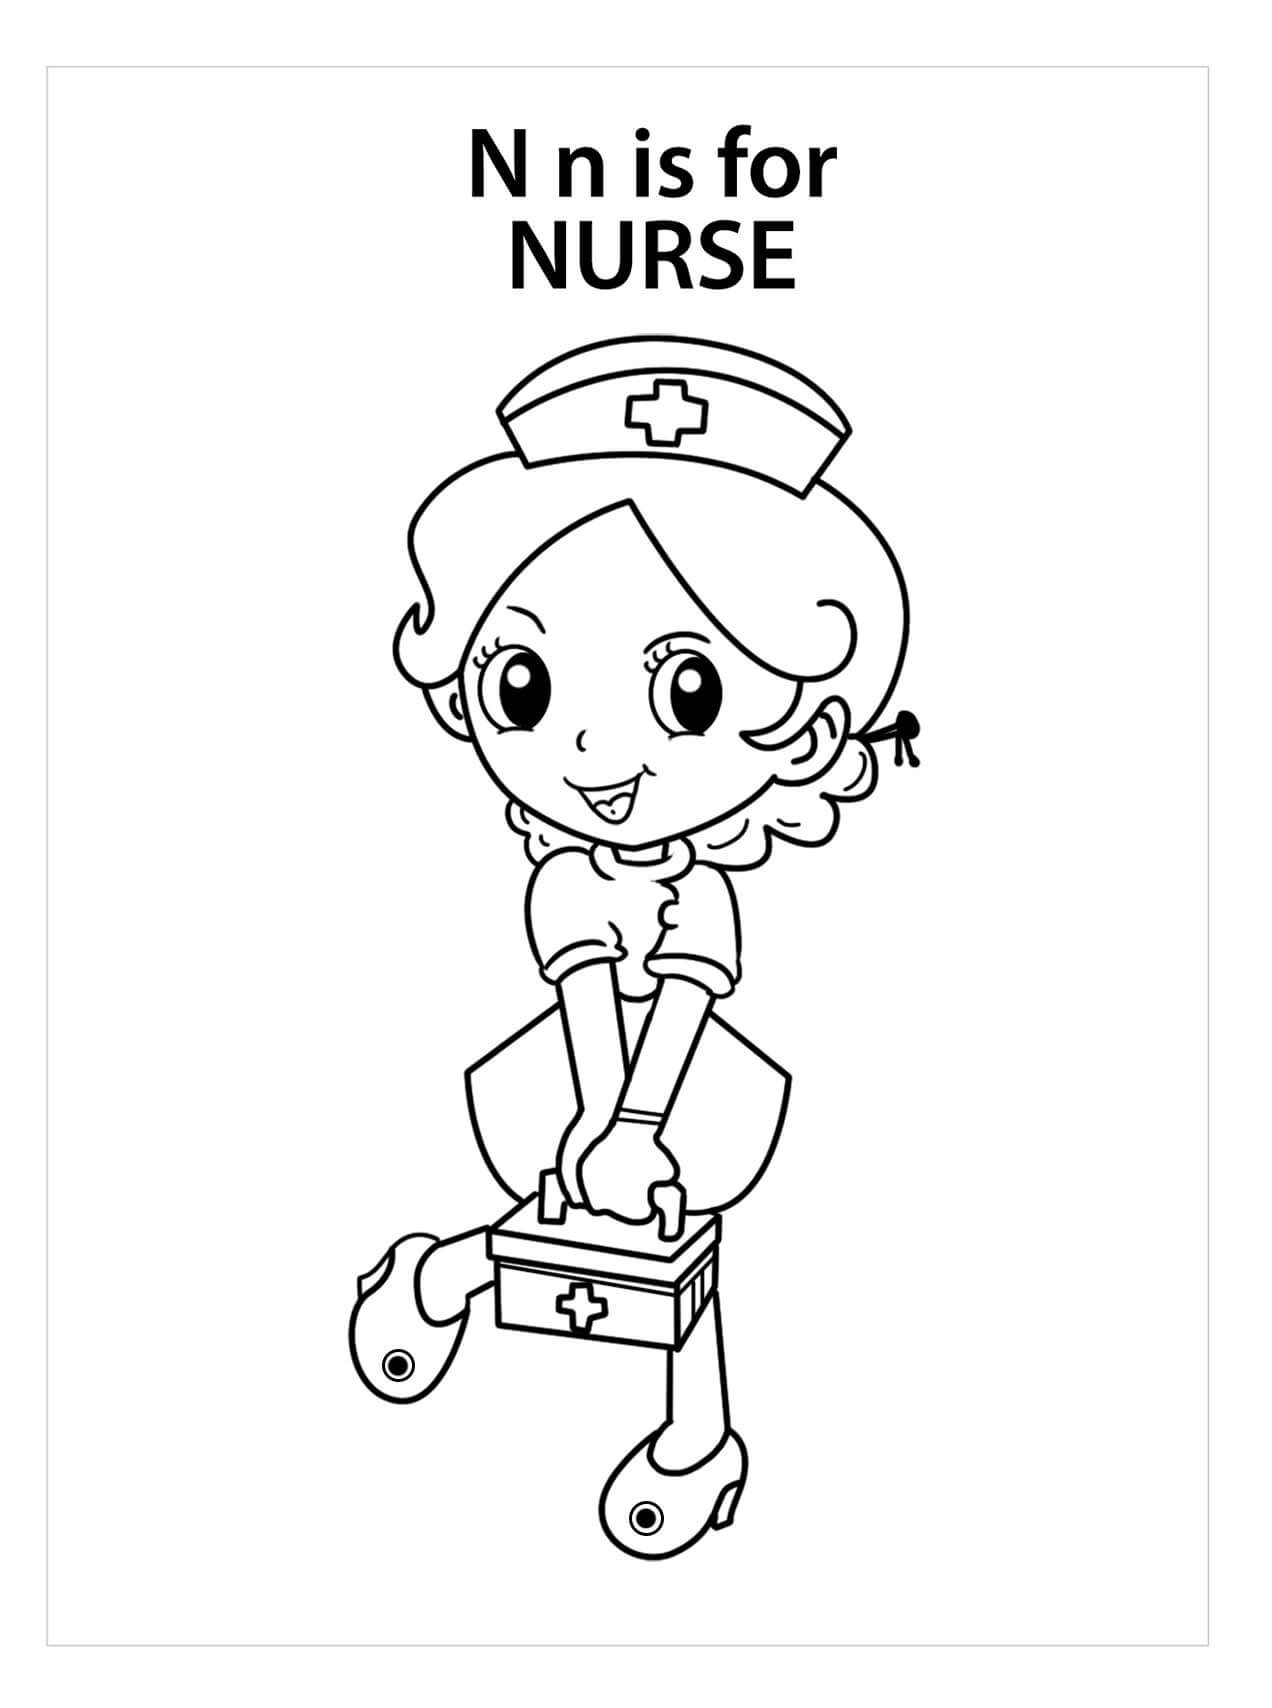 La Letra n es para Enfermera